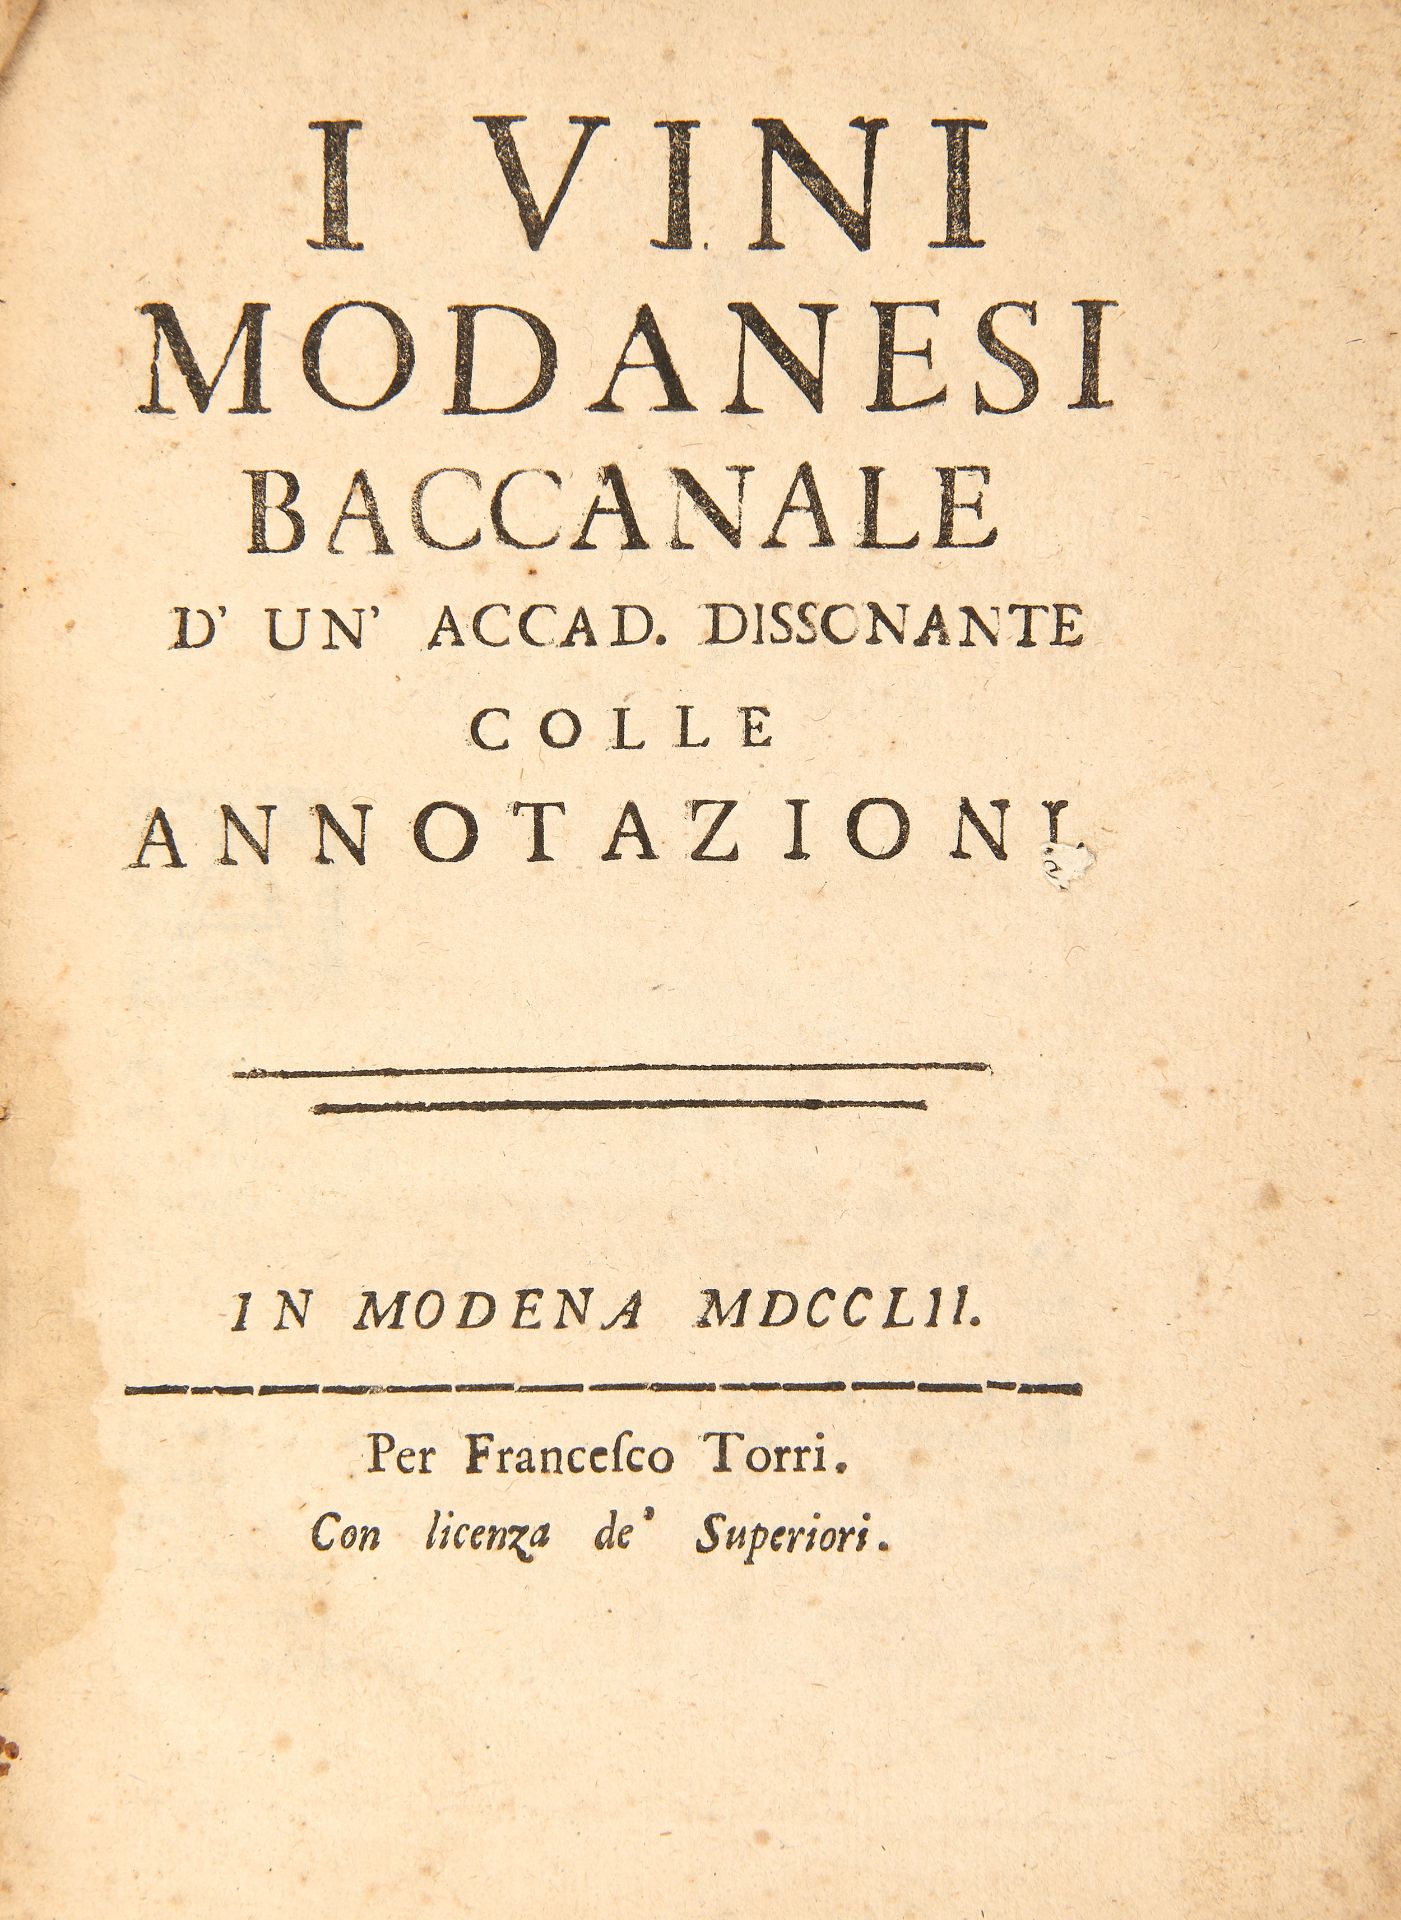 [ENOLOGY] VICINI, Giovanni Battista (1710-1782). I vini modanesi, baccanale. Modern: Torri, 1752.